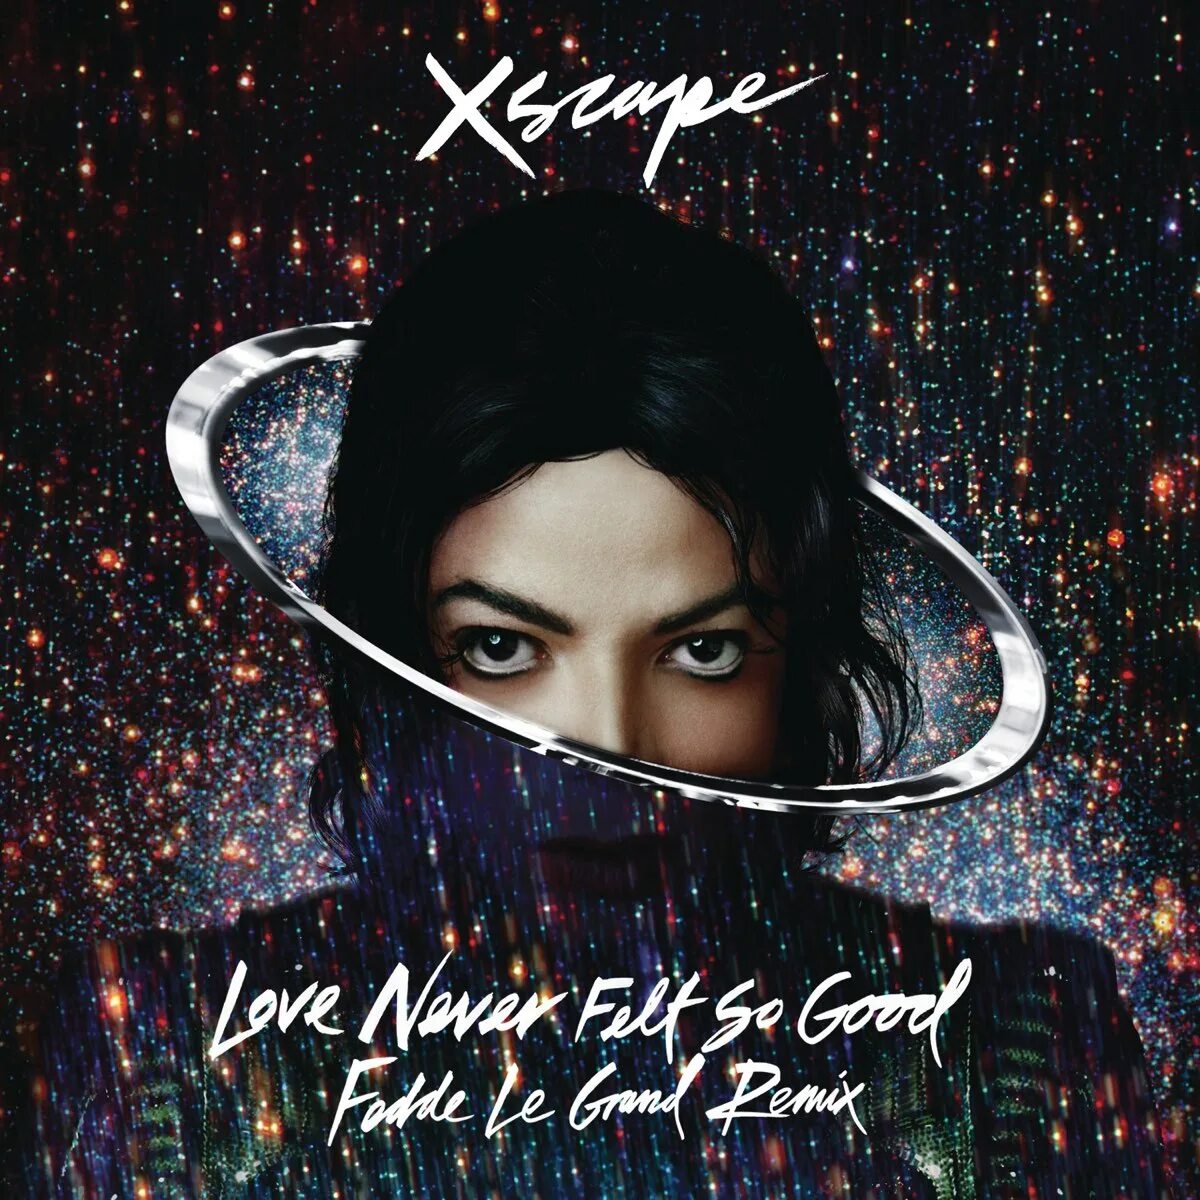 Michael Jackson Love never felt so good. Love never felt so good от Michael Jackson. Michael jackson feeling